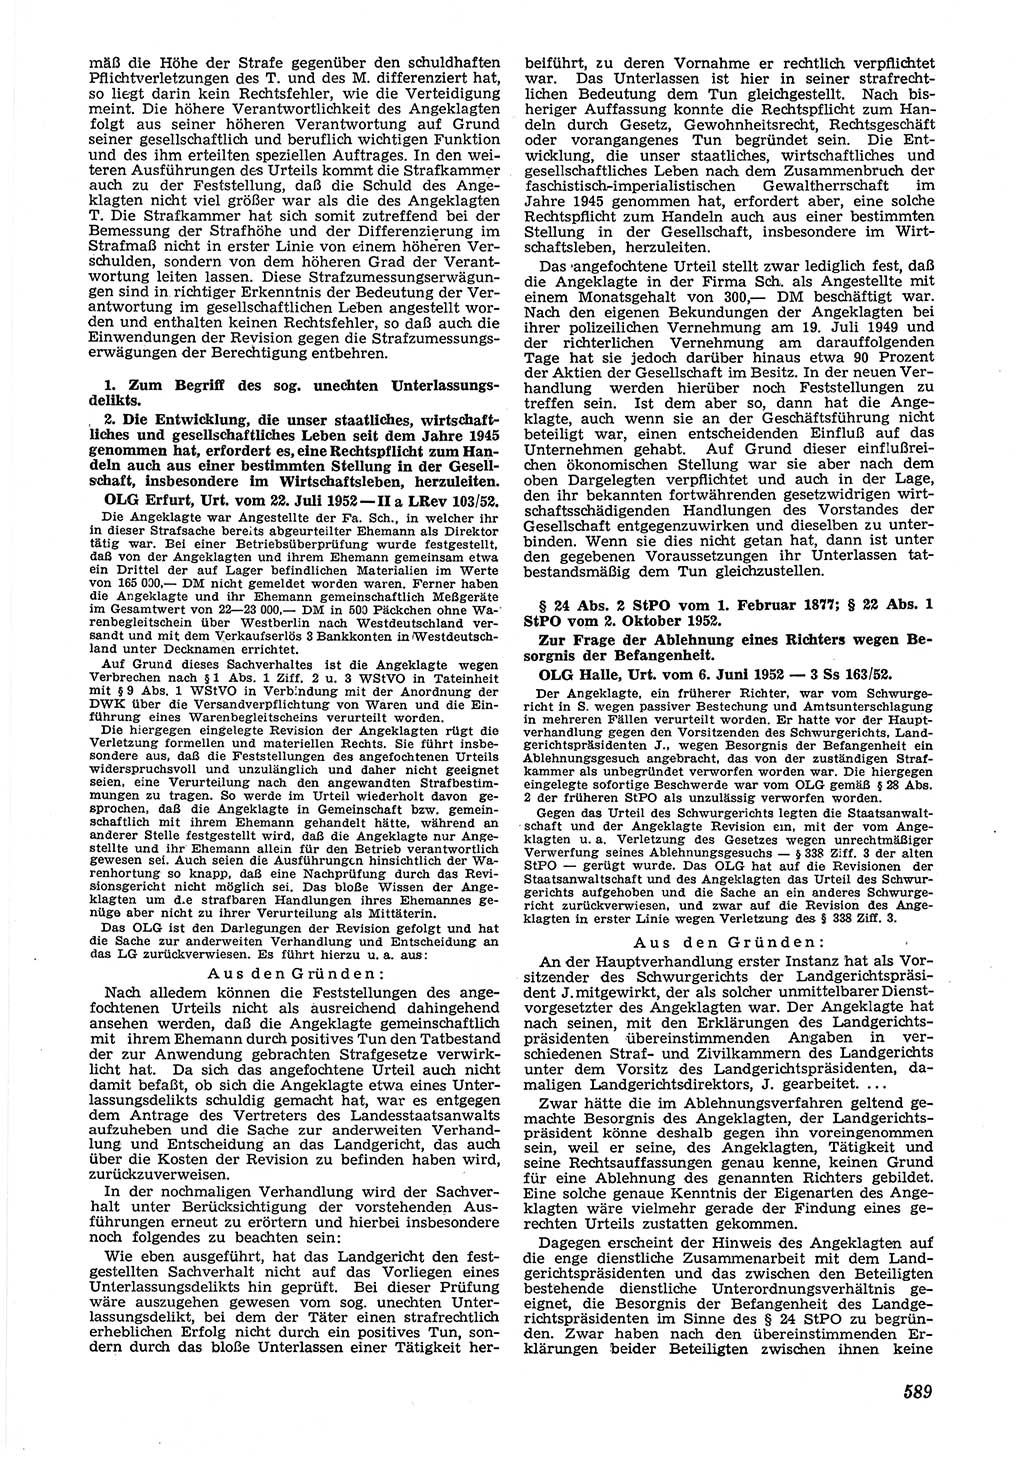 Neue Justiz (NJ), Zeitschrift für Recht und Rechtswissenschaft [Deutsche Demokratische Republik (DDR)], 6. Jahrgang 1952, Seite 589 (NJ DDR 1952, S. 589)